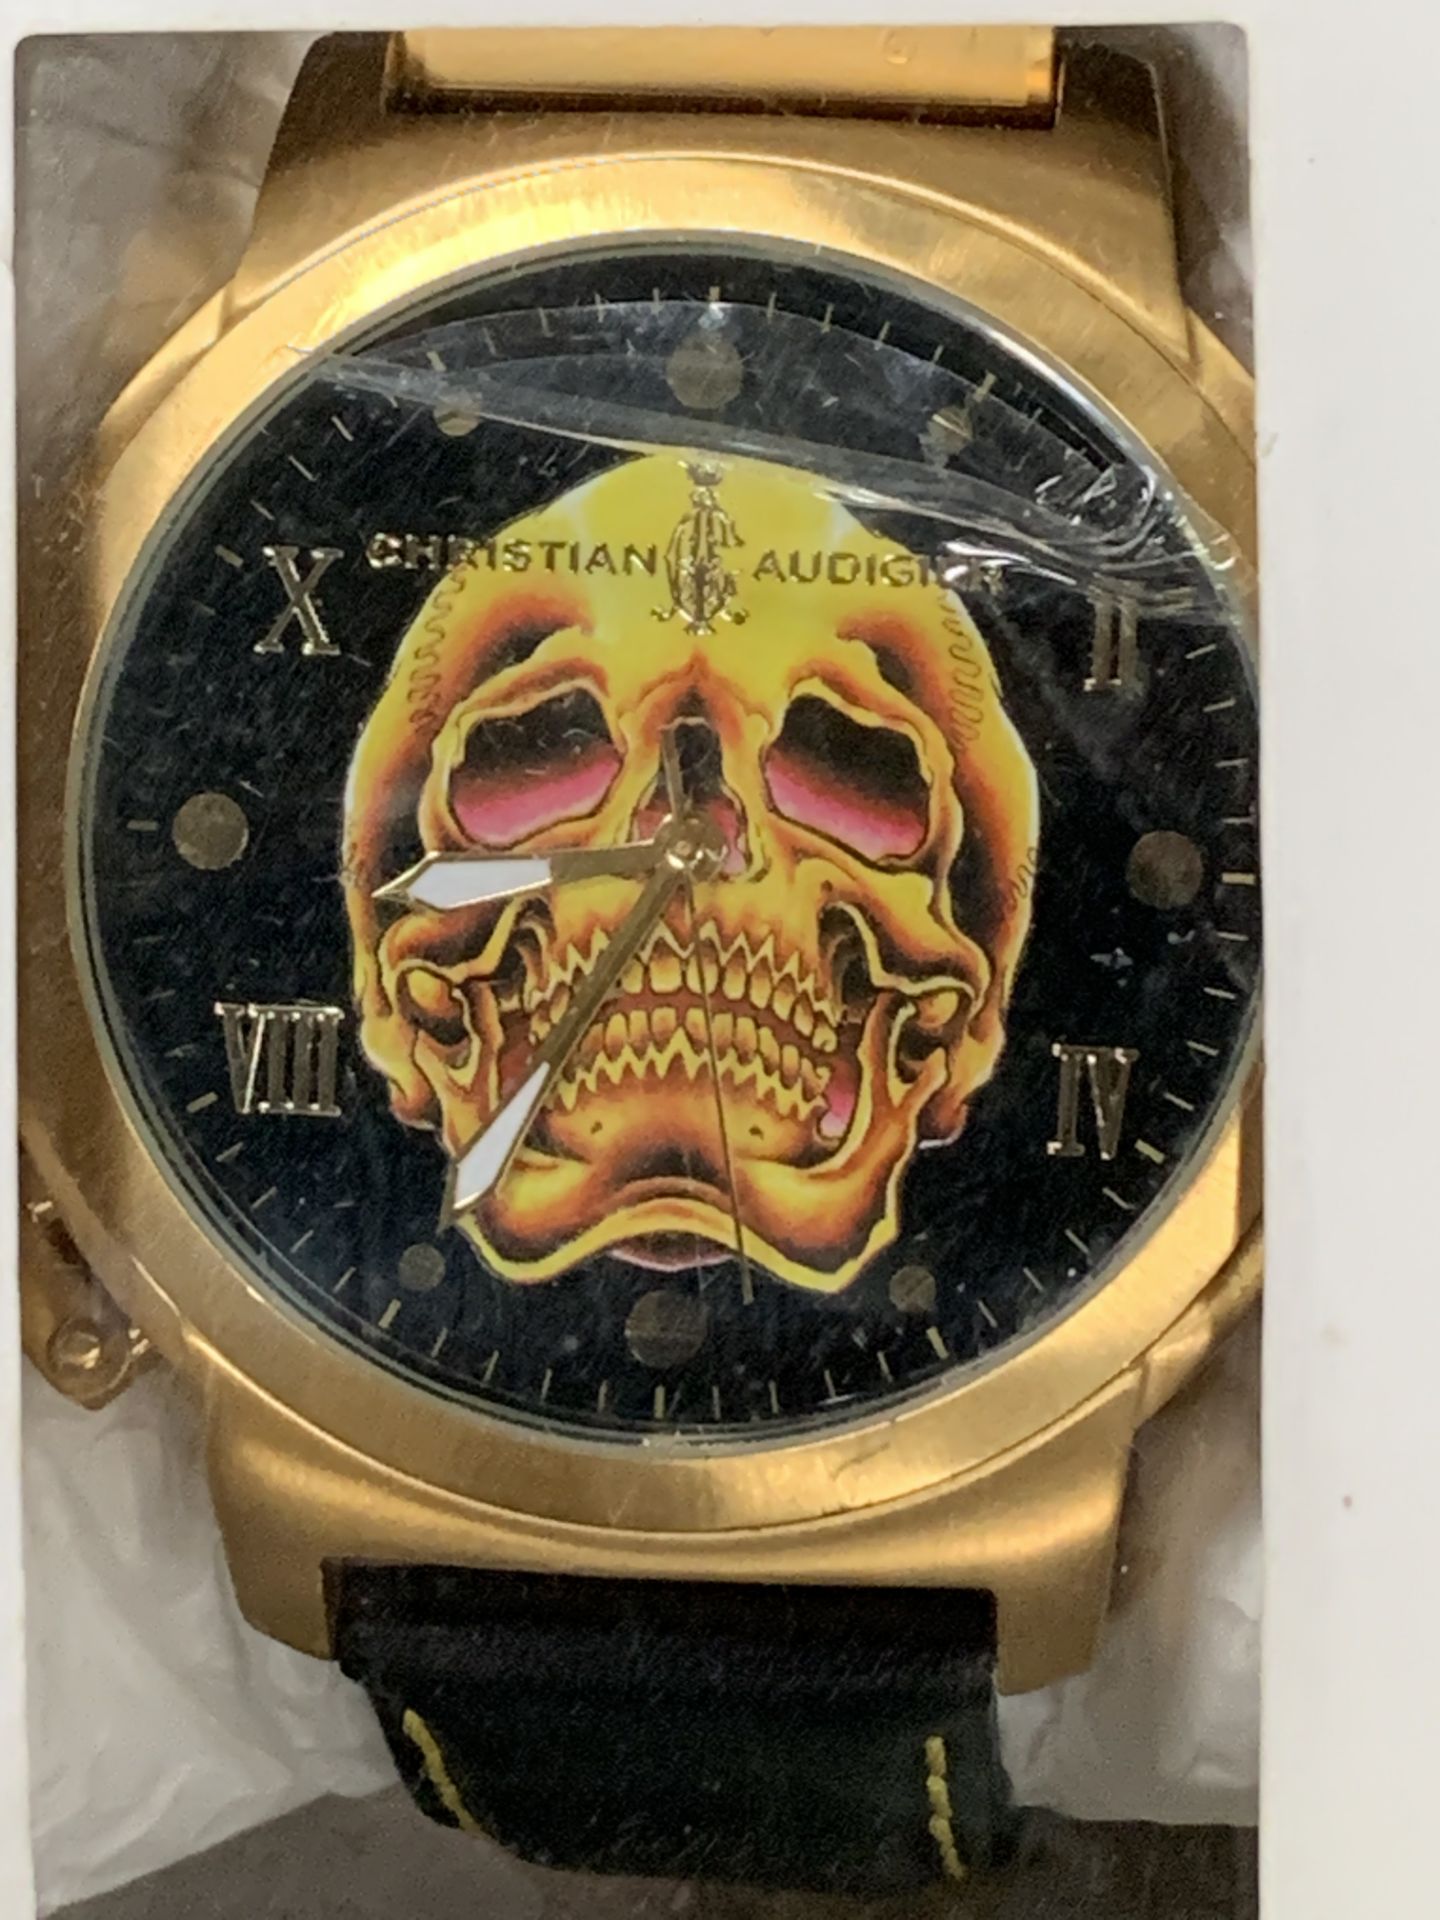 Christian Audigier new Gents wristwatch, Model ETE-103 - Death Skull